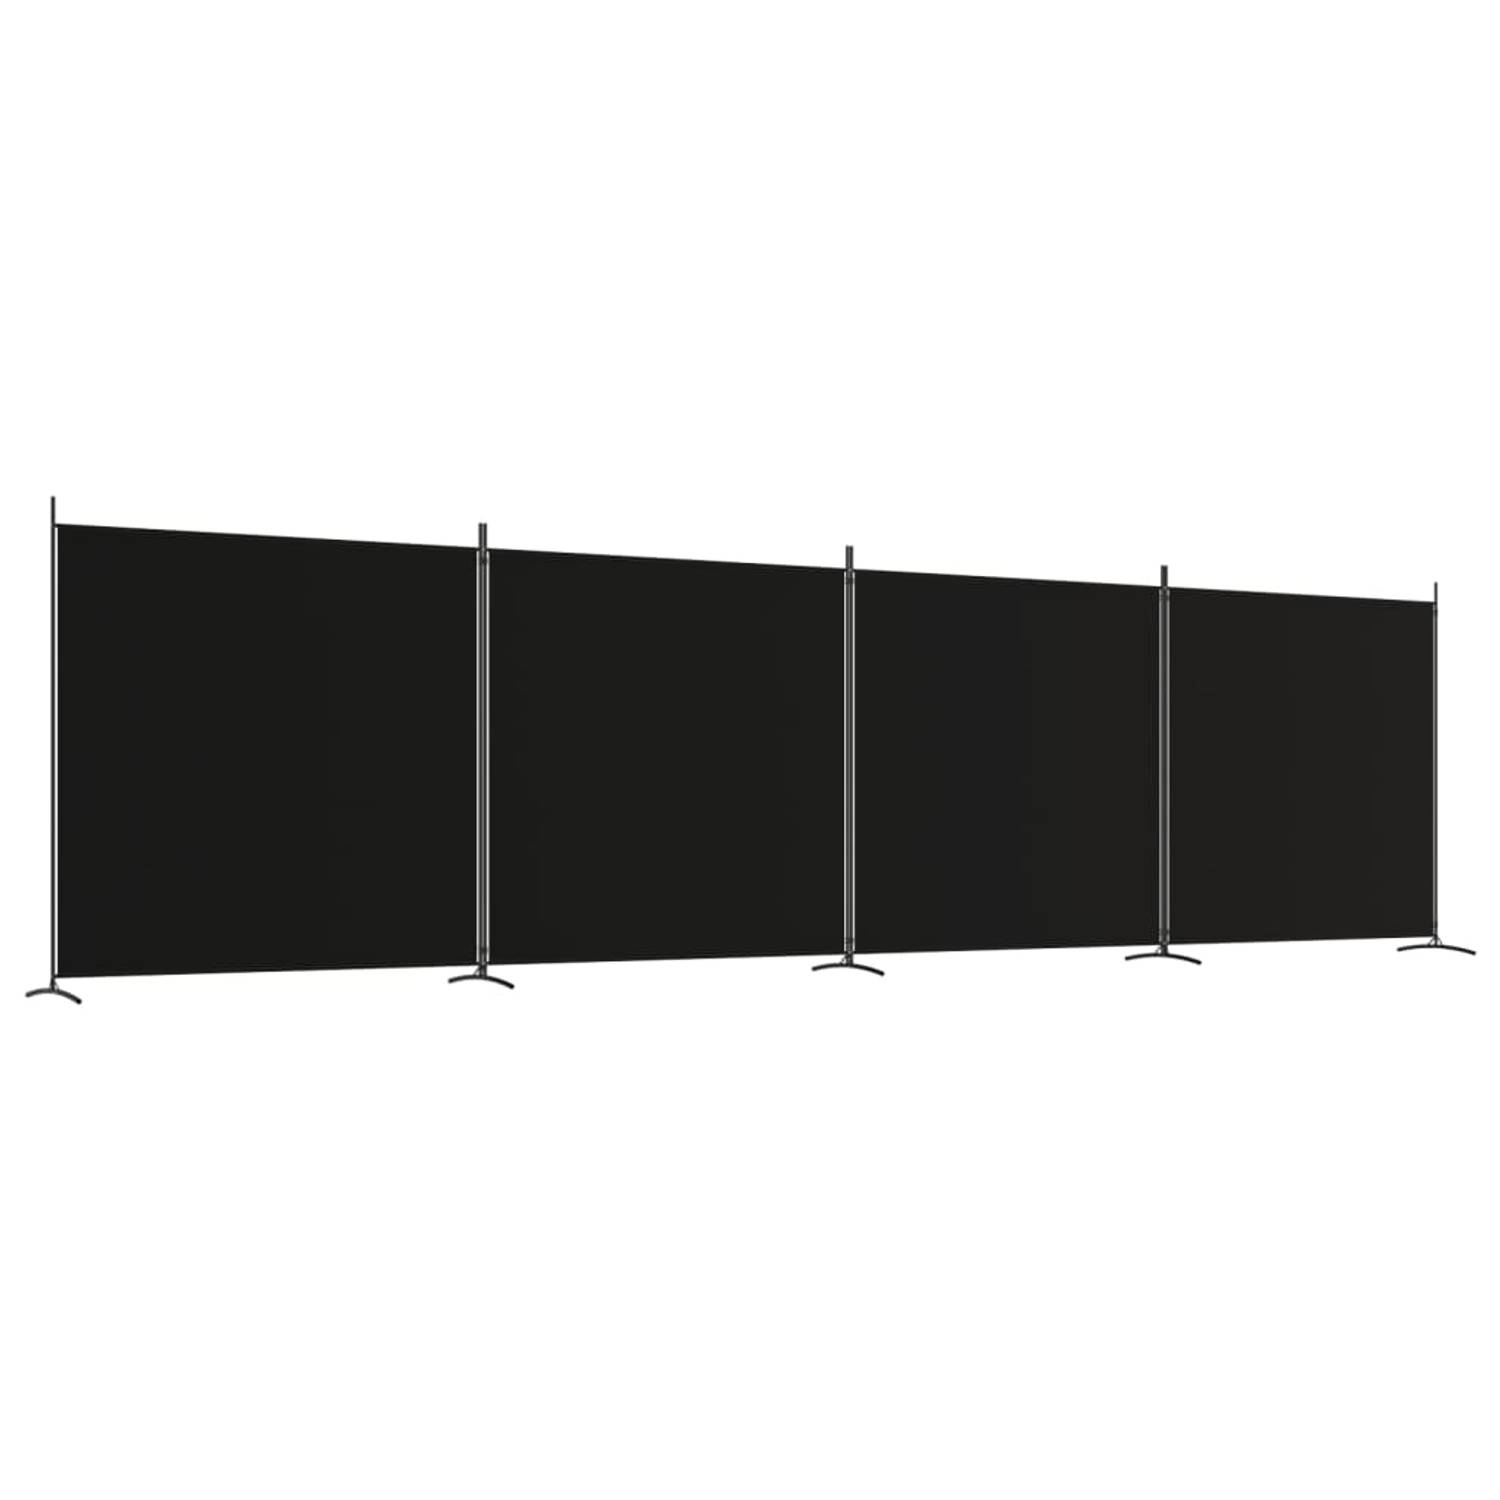 The Living Store Kamerscherm - 4 Panelen - Polyester Stof - Zwart - 698 x 180 cm - Inklapbaar